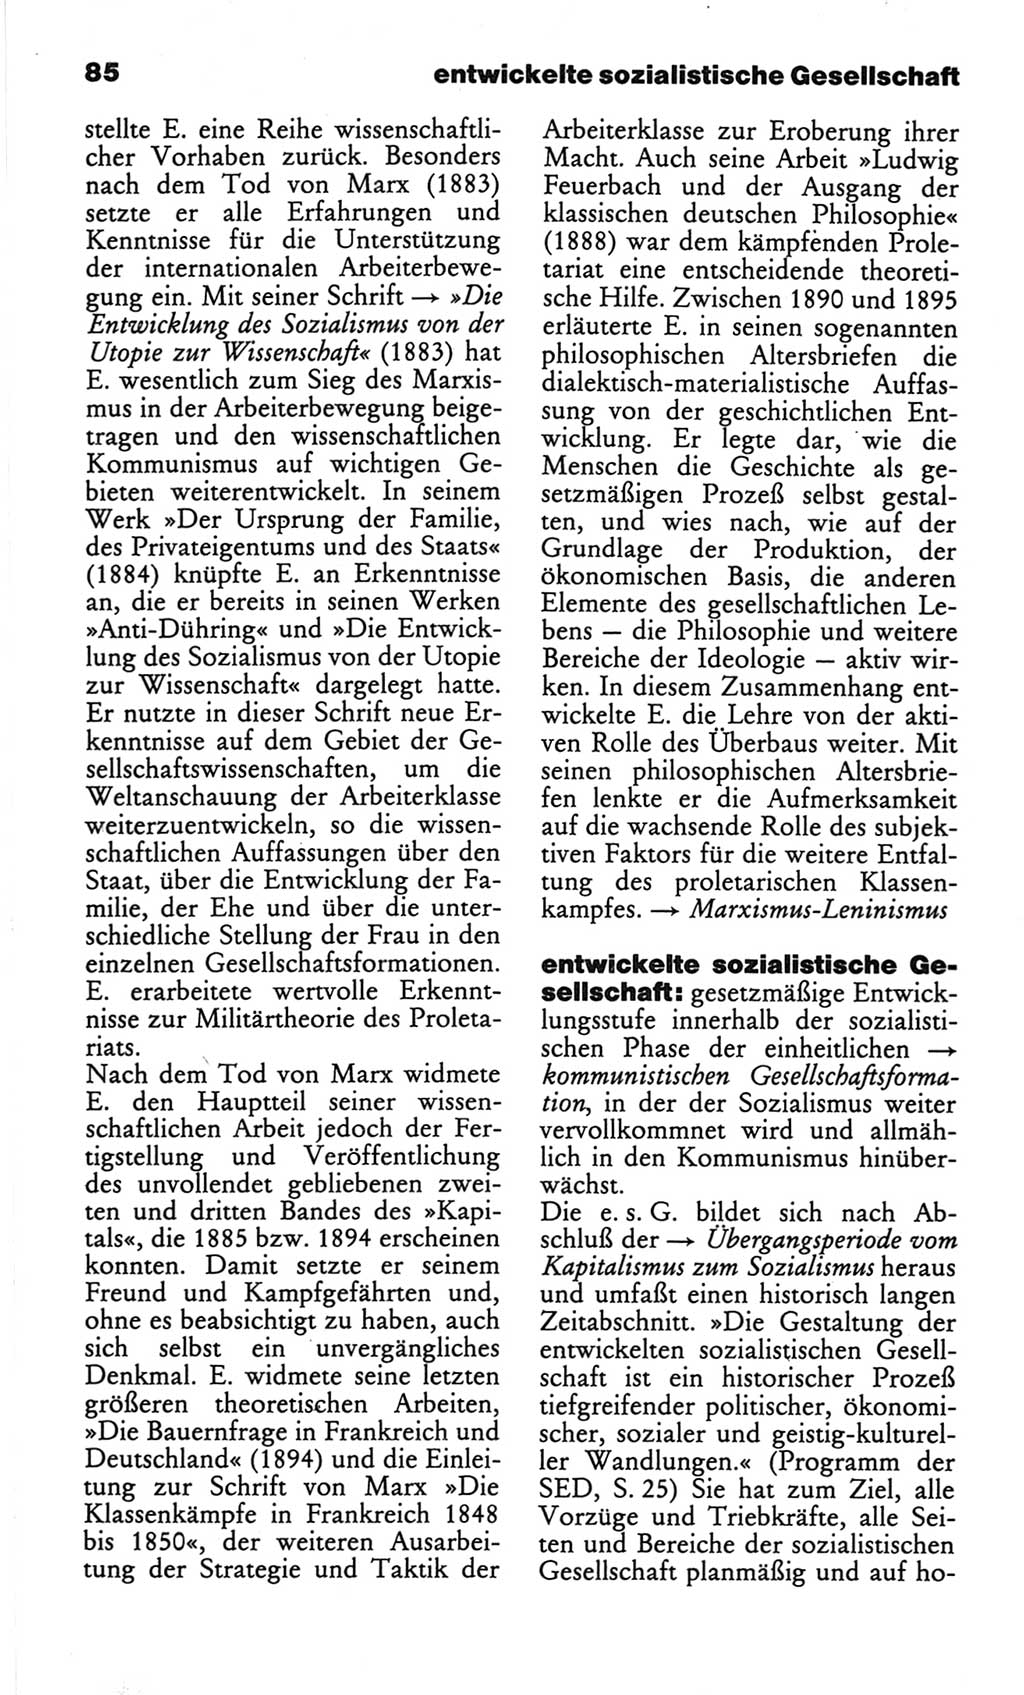 Wörterbuch des wissenschaftlichen Kommunismus [Deutsche Demokratische Republik (DDR)] 1982, Seite 85 (Wb. wiss. Komm. DDR 1982, S. 85)